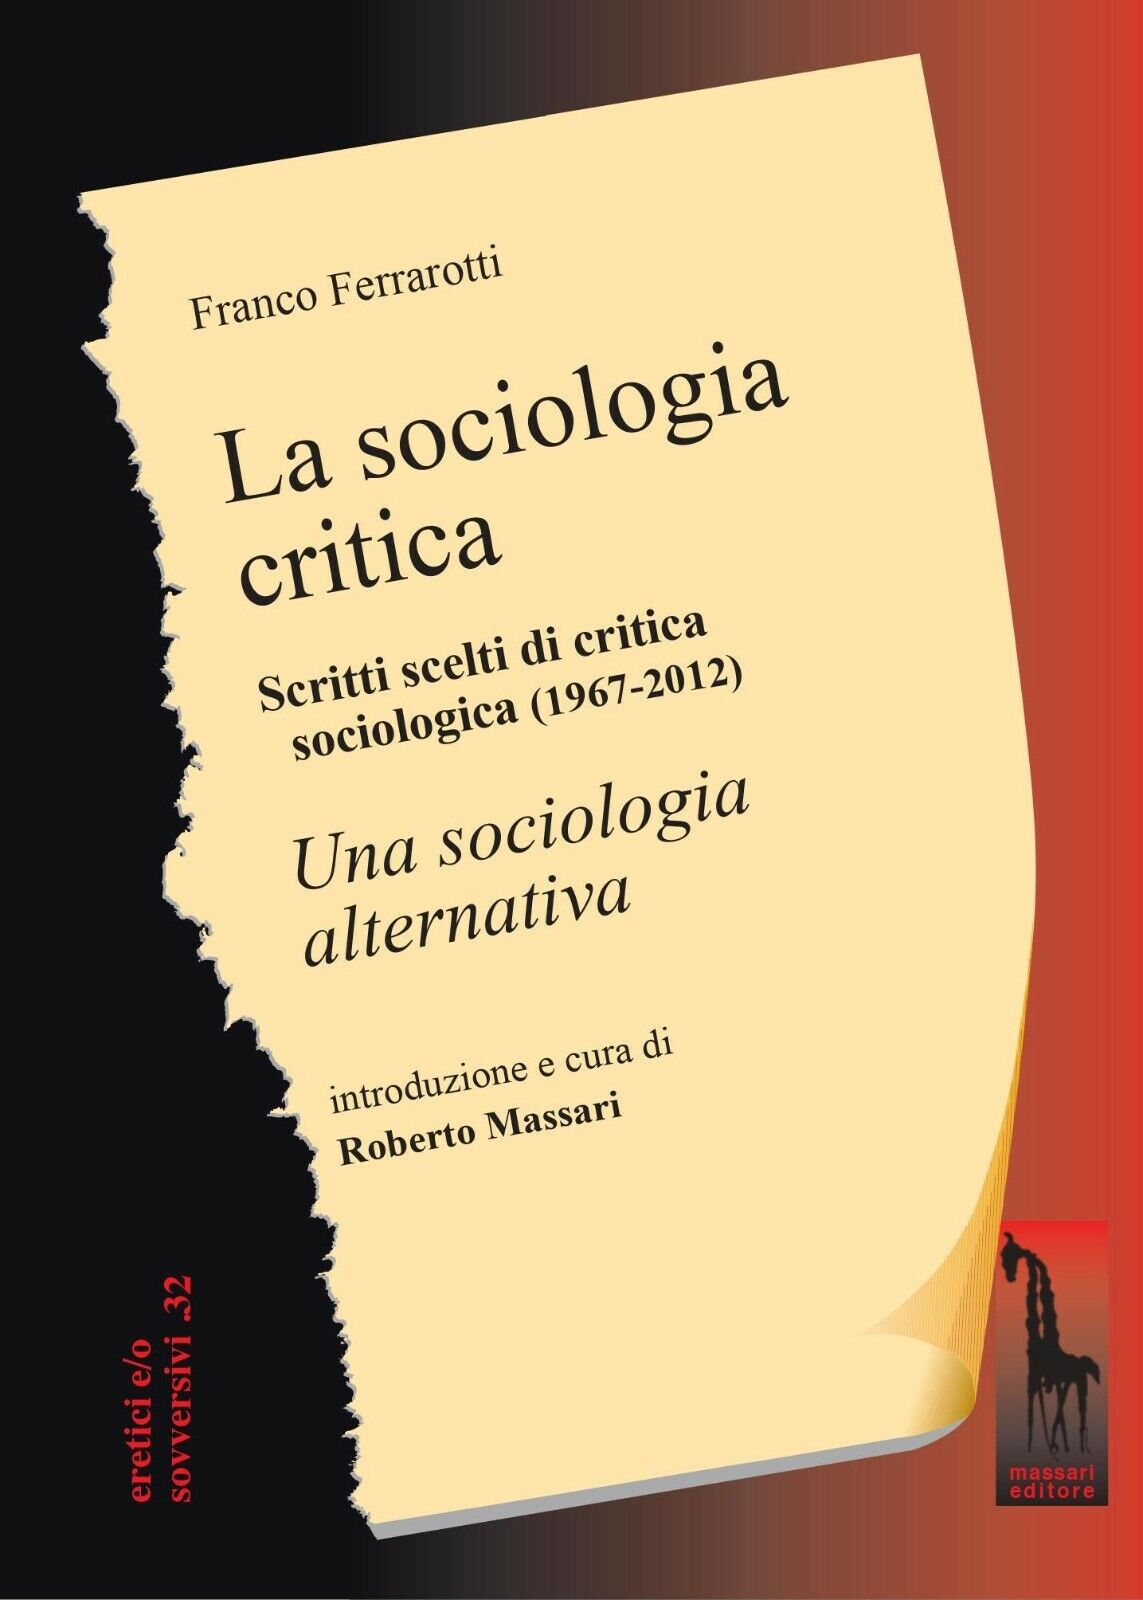 La sociologia critica. Scritti scelti di critica sociologica (1967-1976) seguiti libro usato